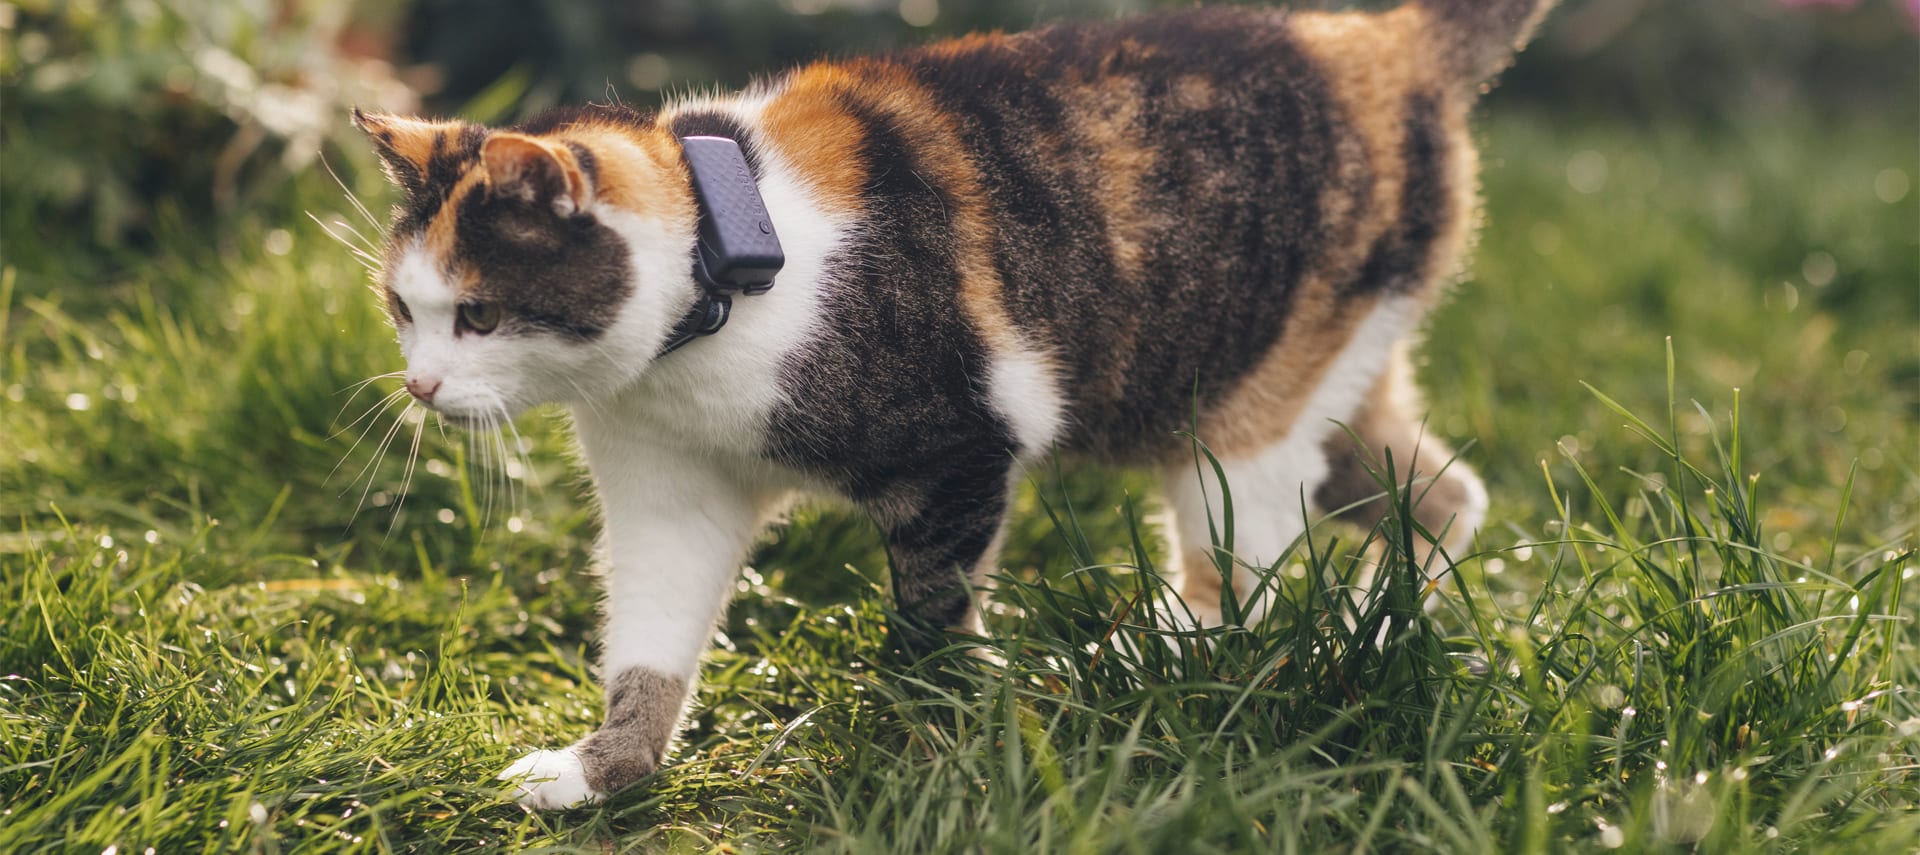 Persona sosteniendo a un gato con un localizador GPS